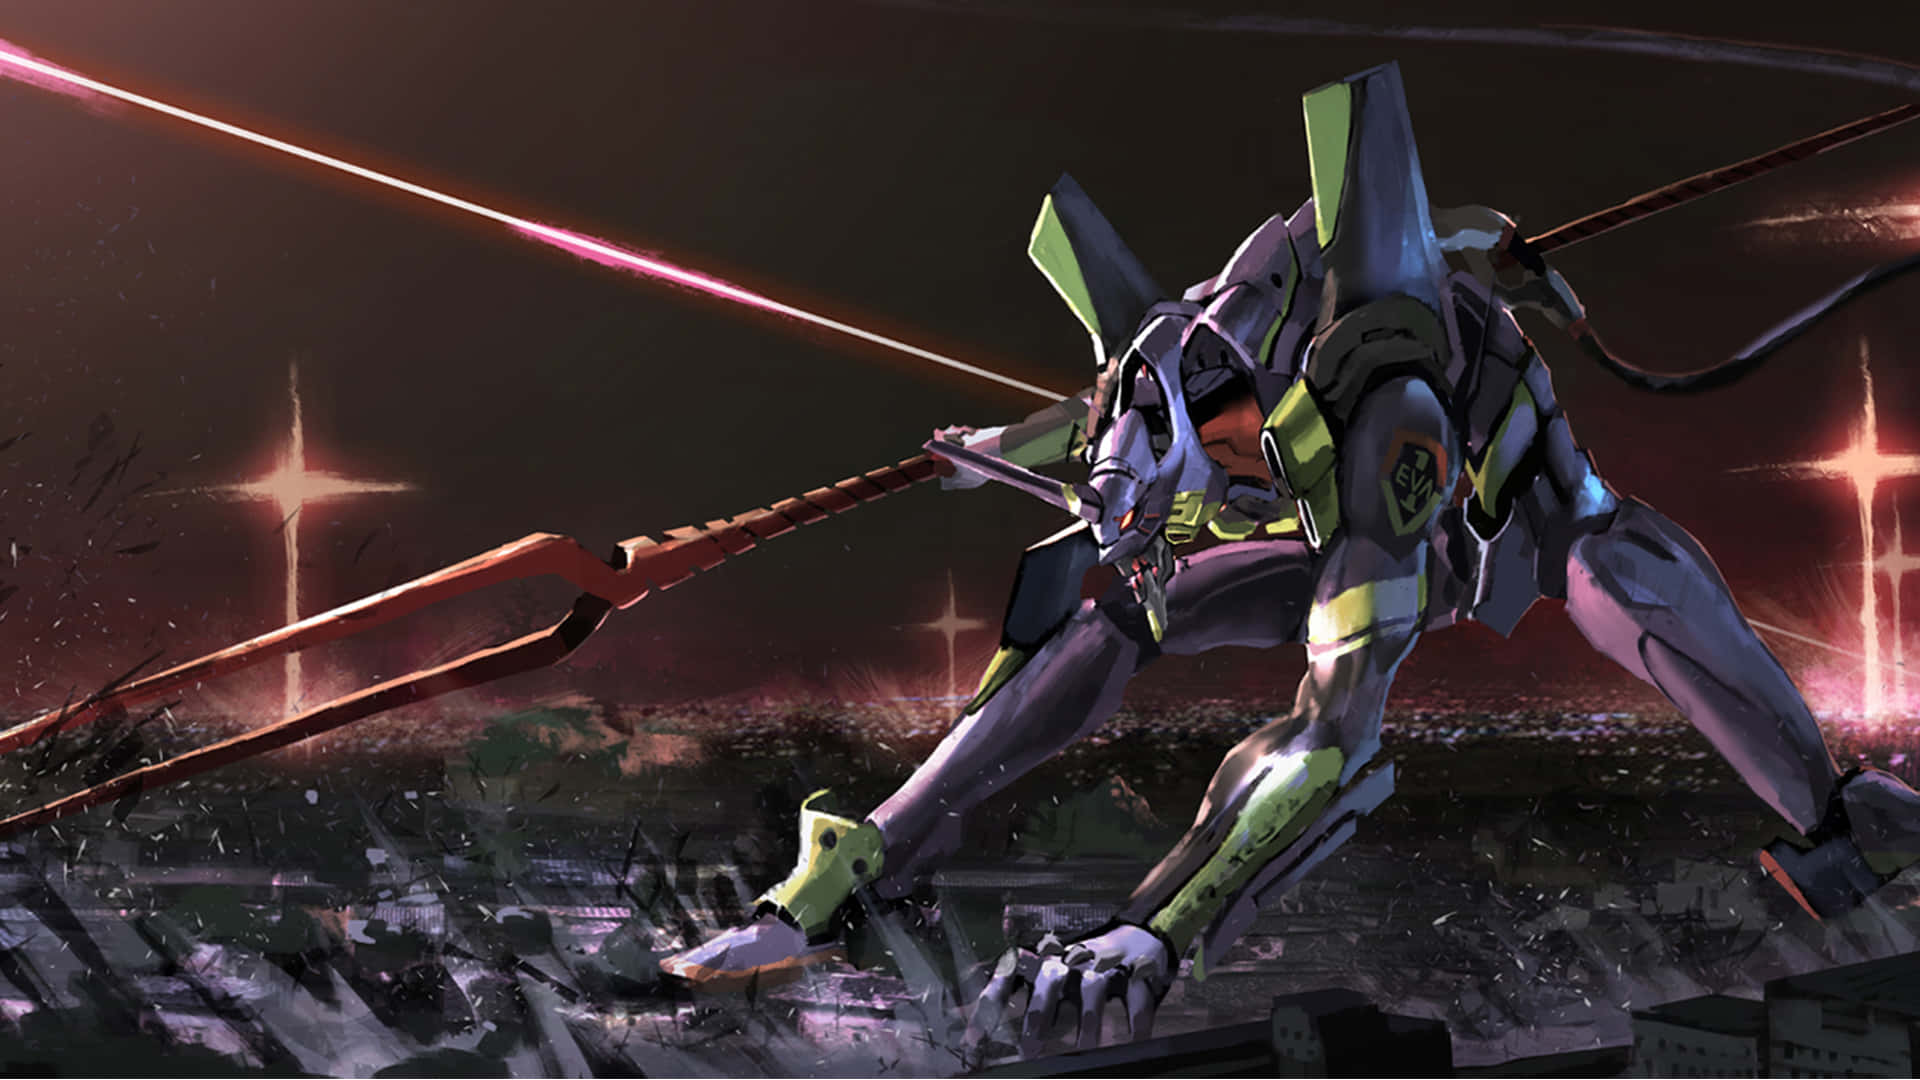 Shinjiikari Kämpar Tillsammans Med Eva-01 För Att Skydda Tokyo-3 Från Invaderande Änglar.